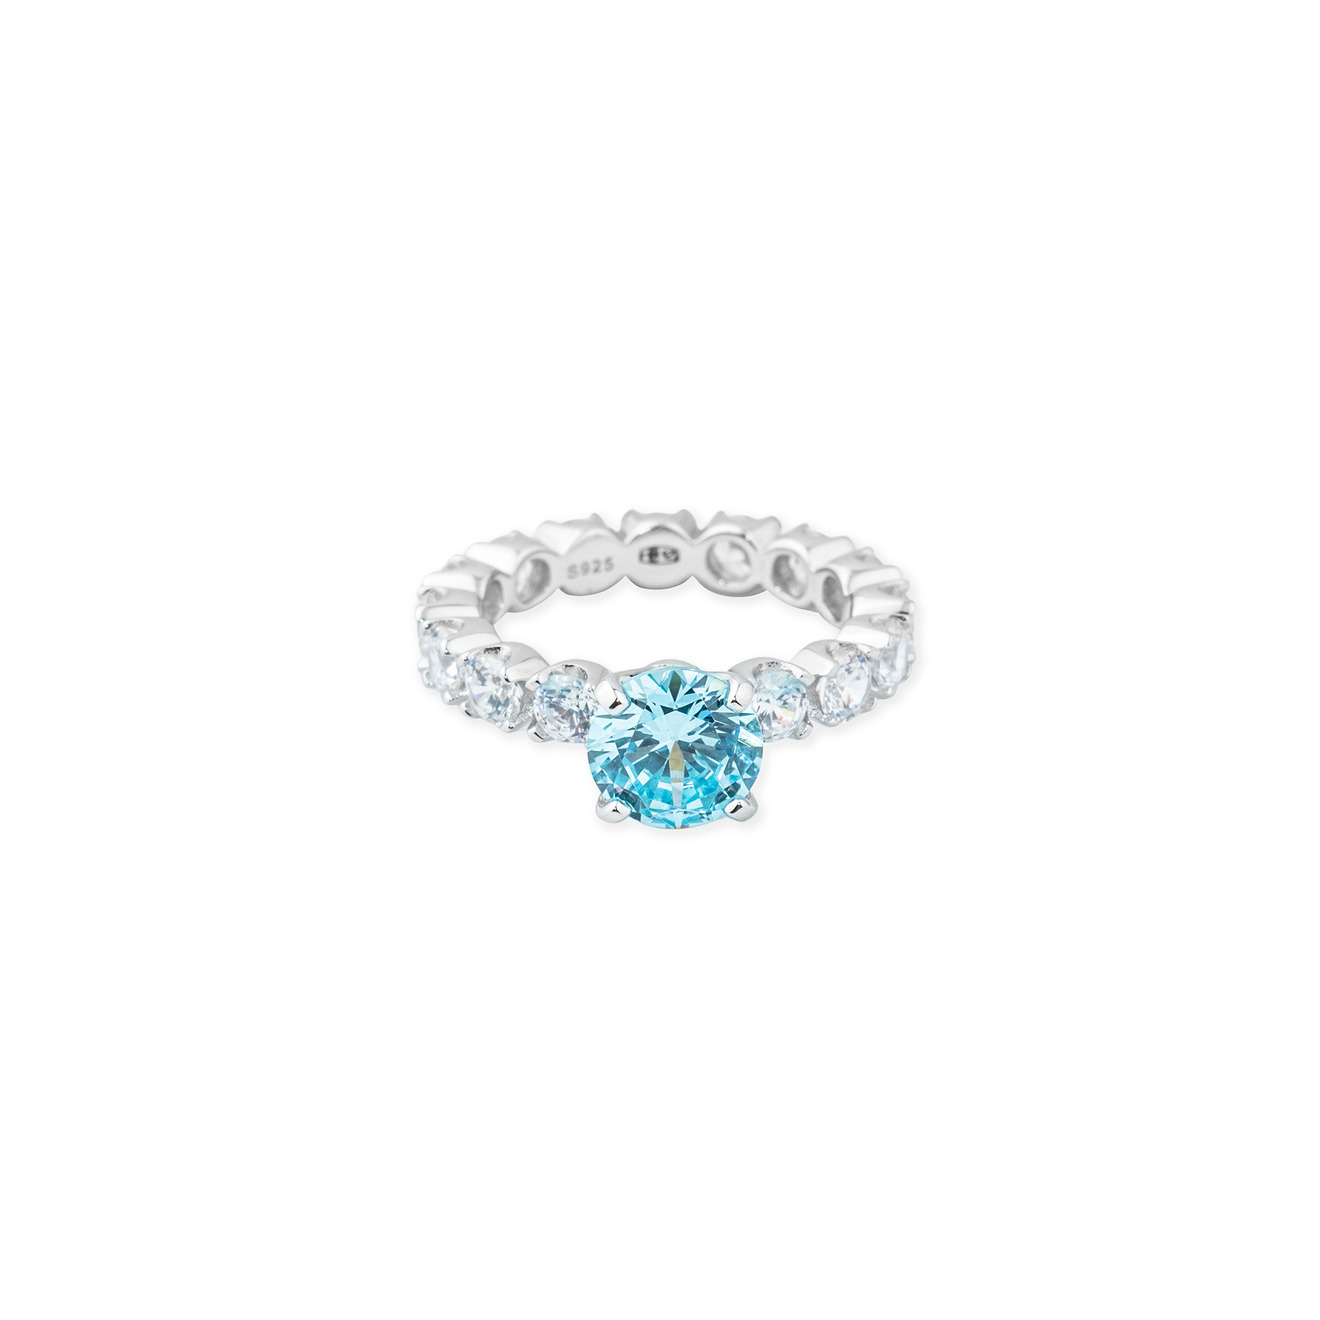 Holy Silver Серебряное кольцо с голубым кристаллом и паве из белых кристаллов